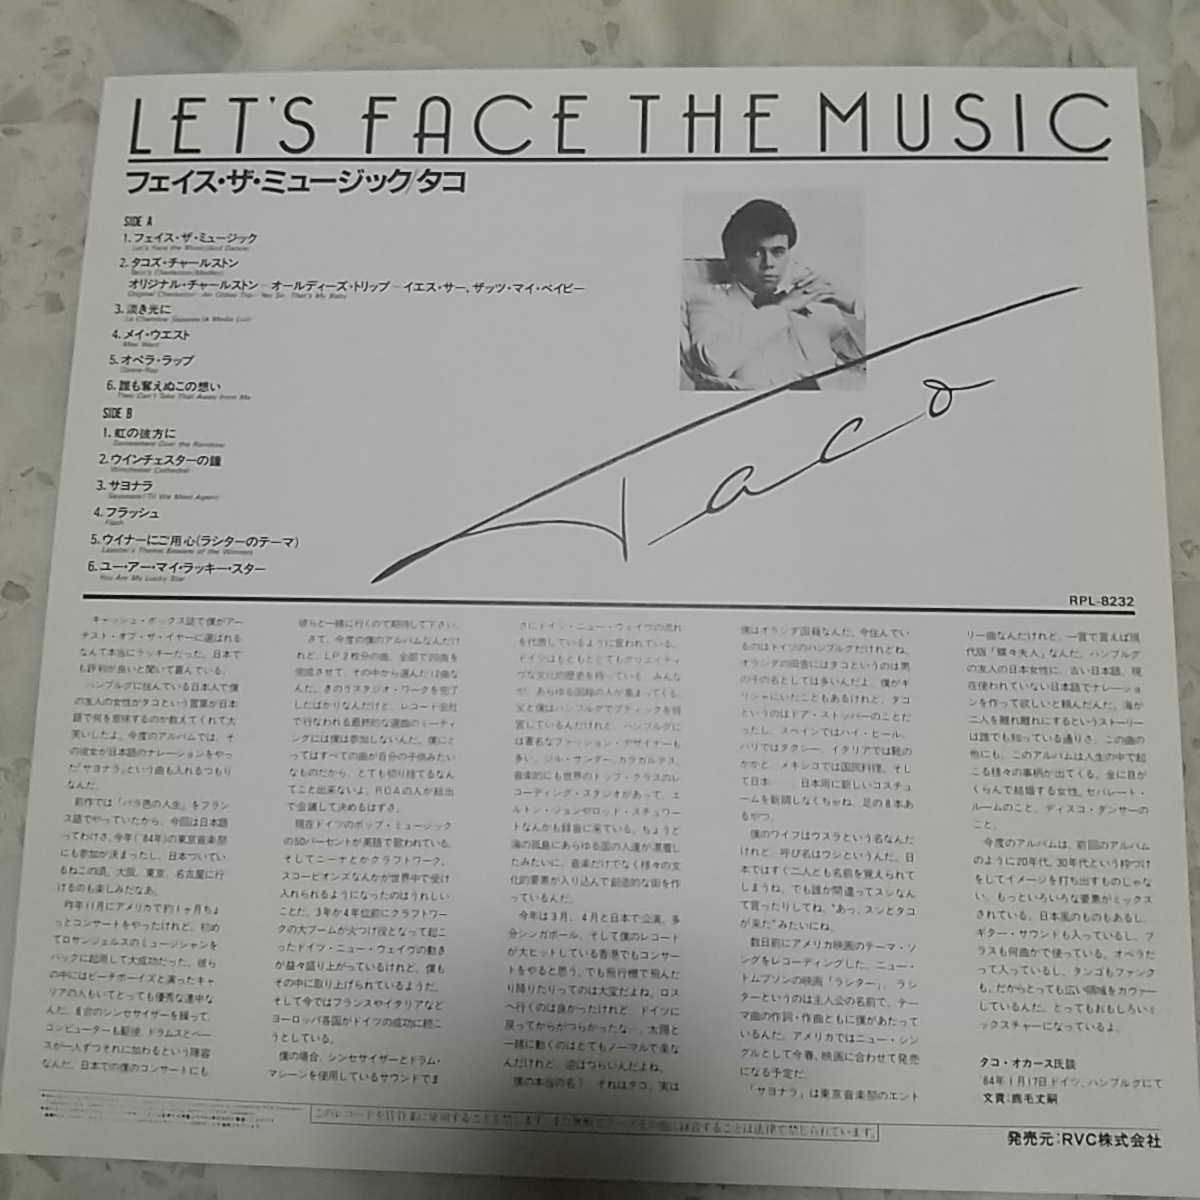 【LP】タコ TACO/フェイス・ザ・ミュージック LET'S FACE THE MUSIC《非売品プロモ盤》_画像3